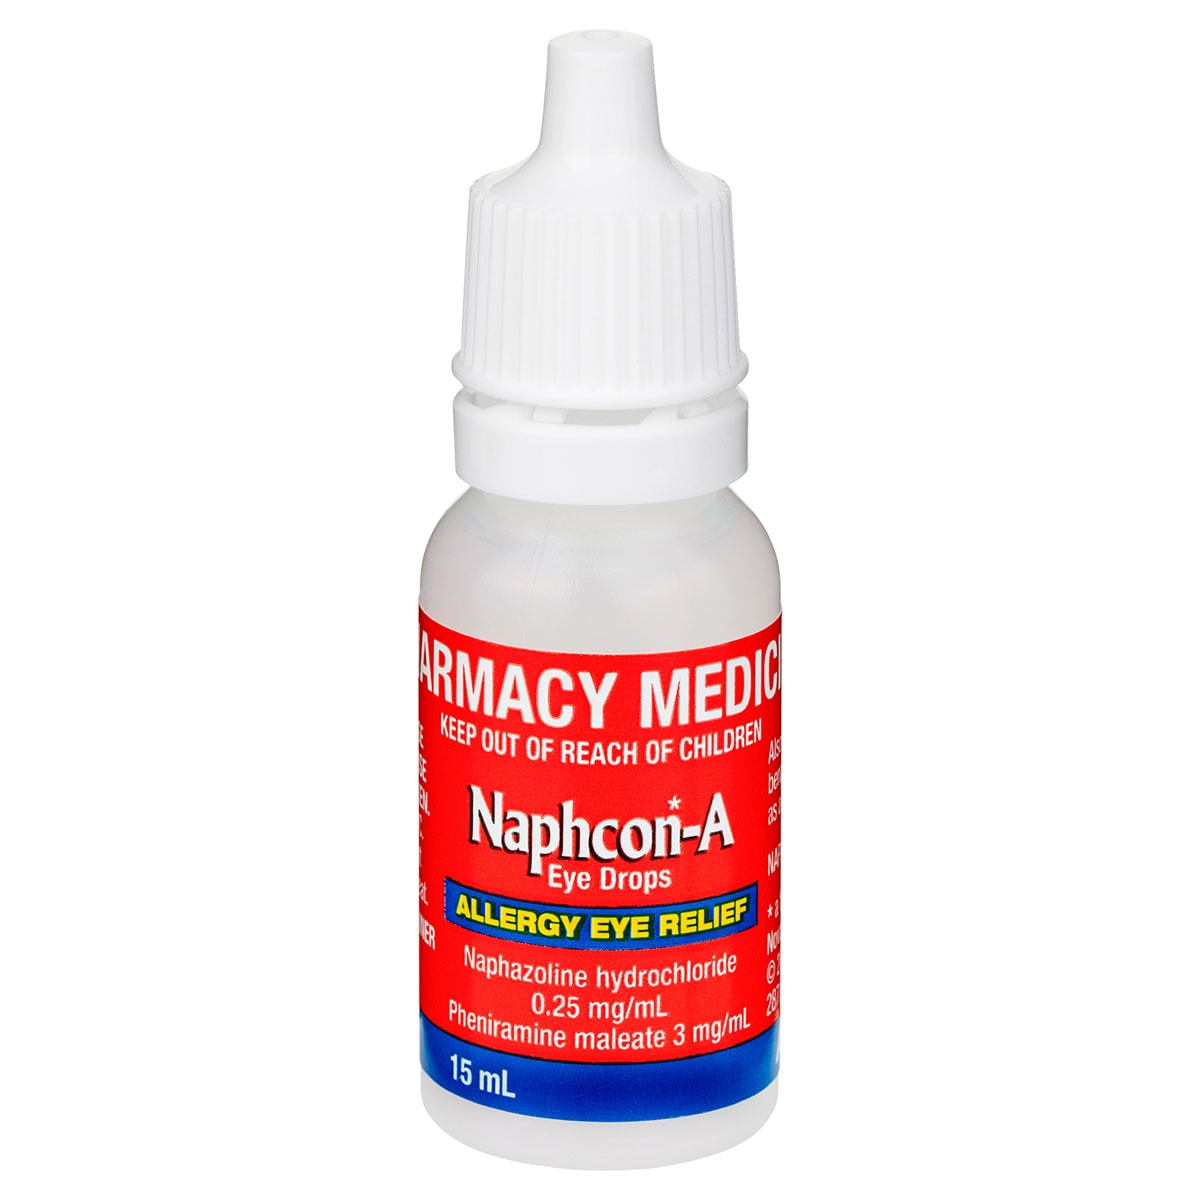 Naphcon-A Eye Drops Allergy Eye Relief 15ml